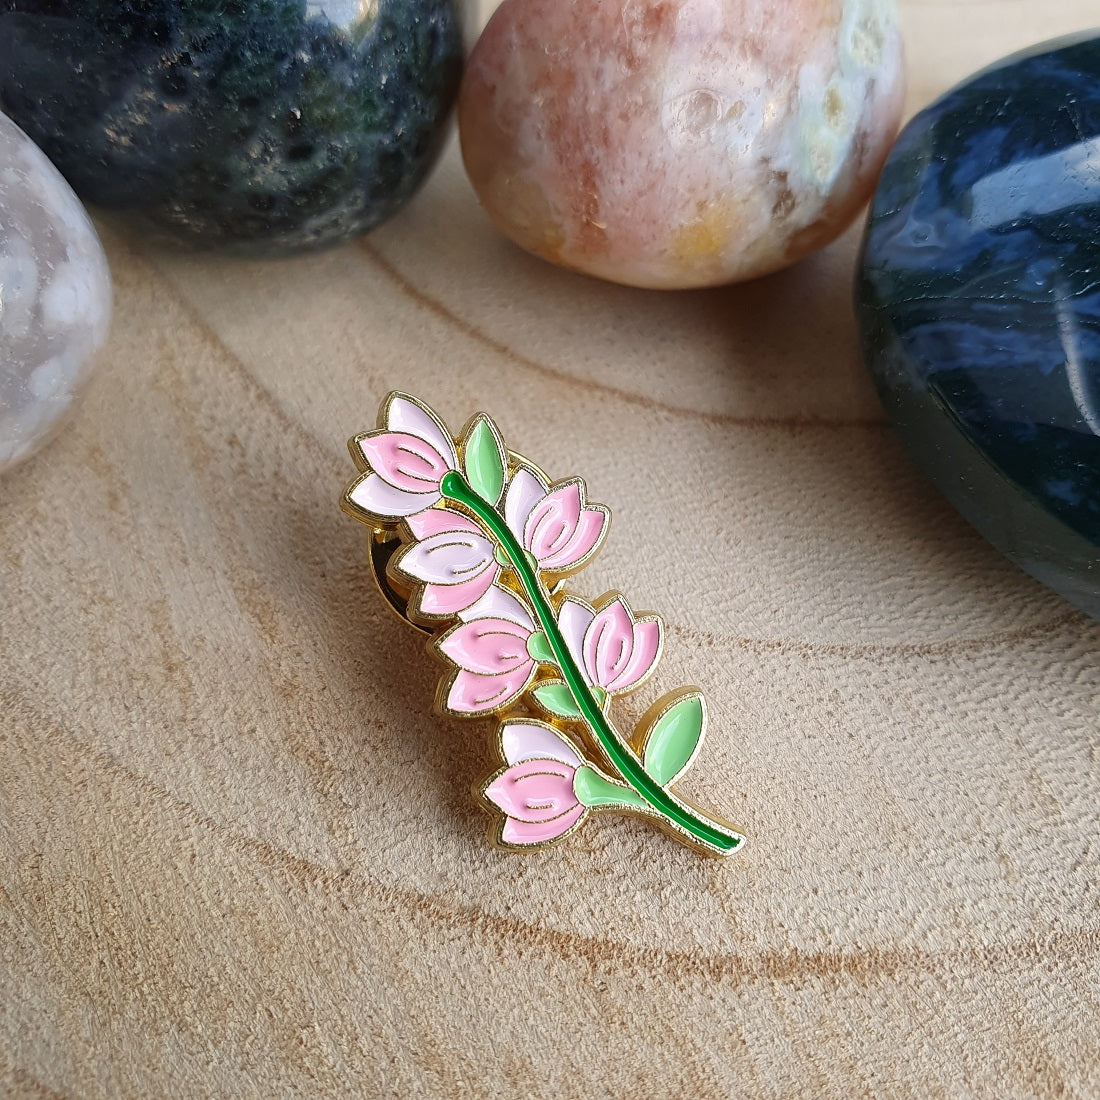 Enamel pin - Roze kelkjes bloemen